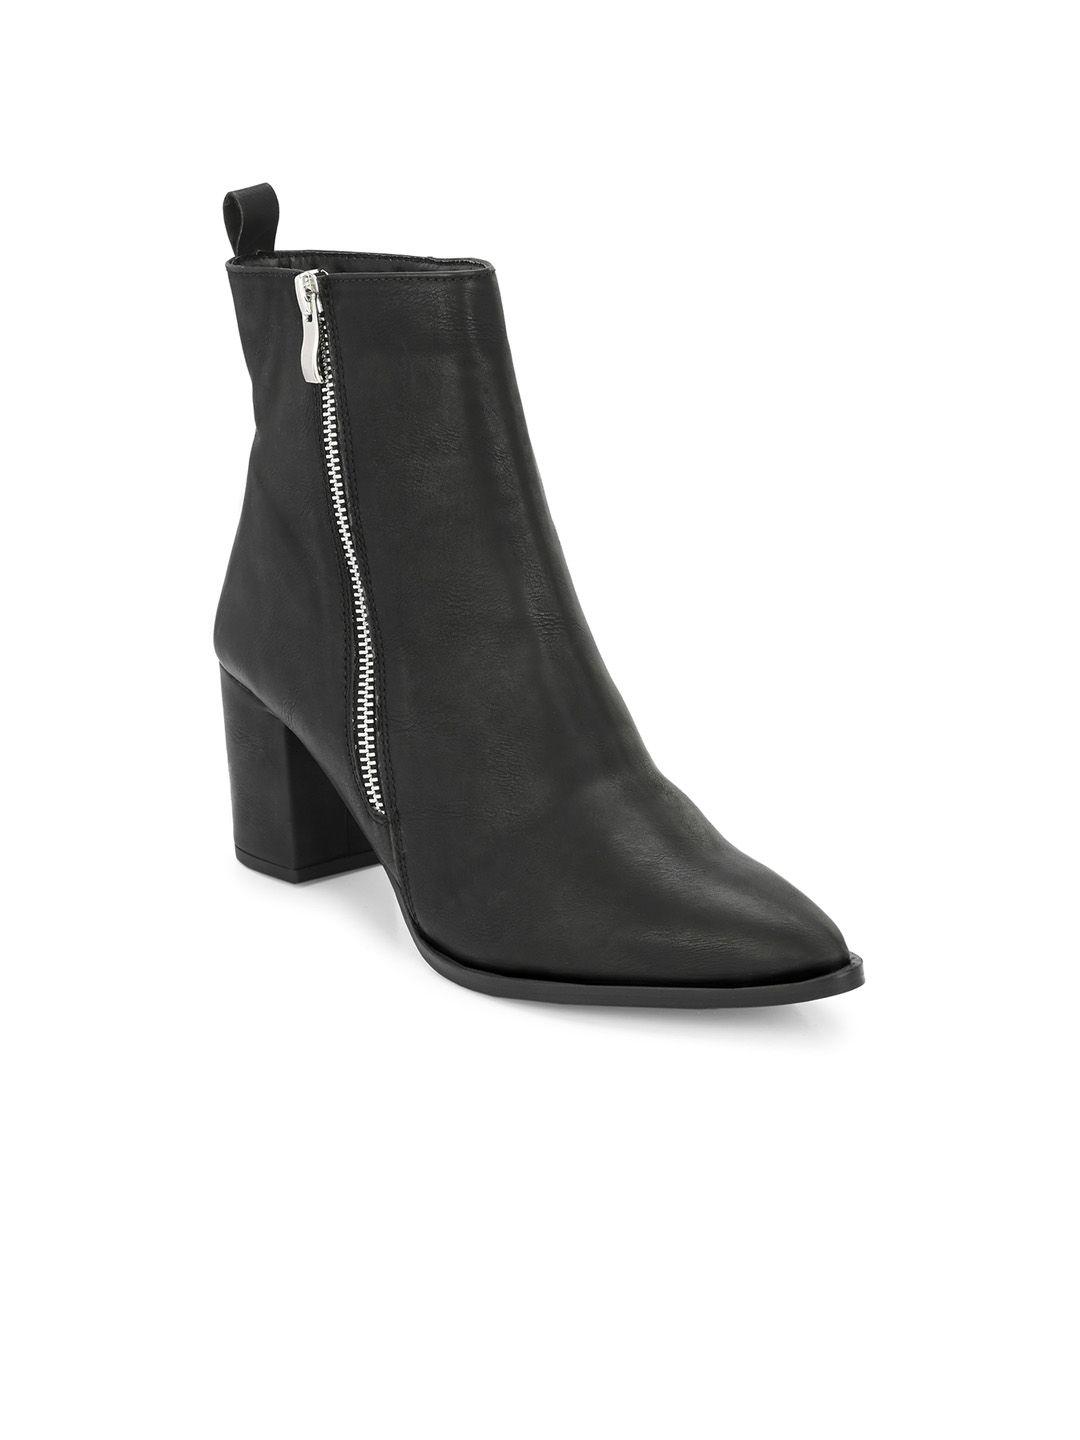 miseen women mid top pointed toe block-heel regular boots